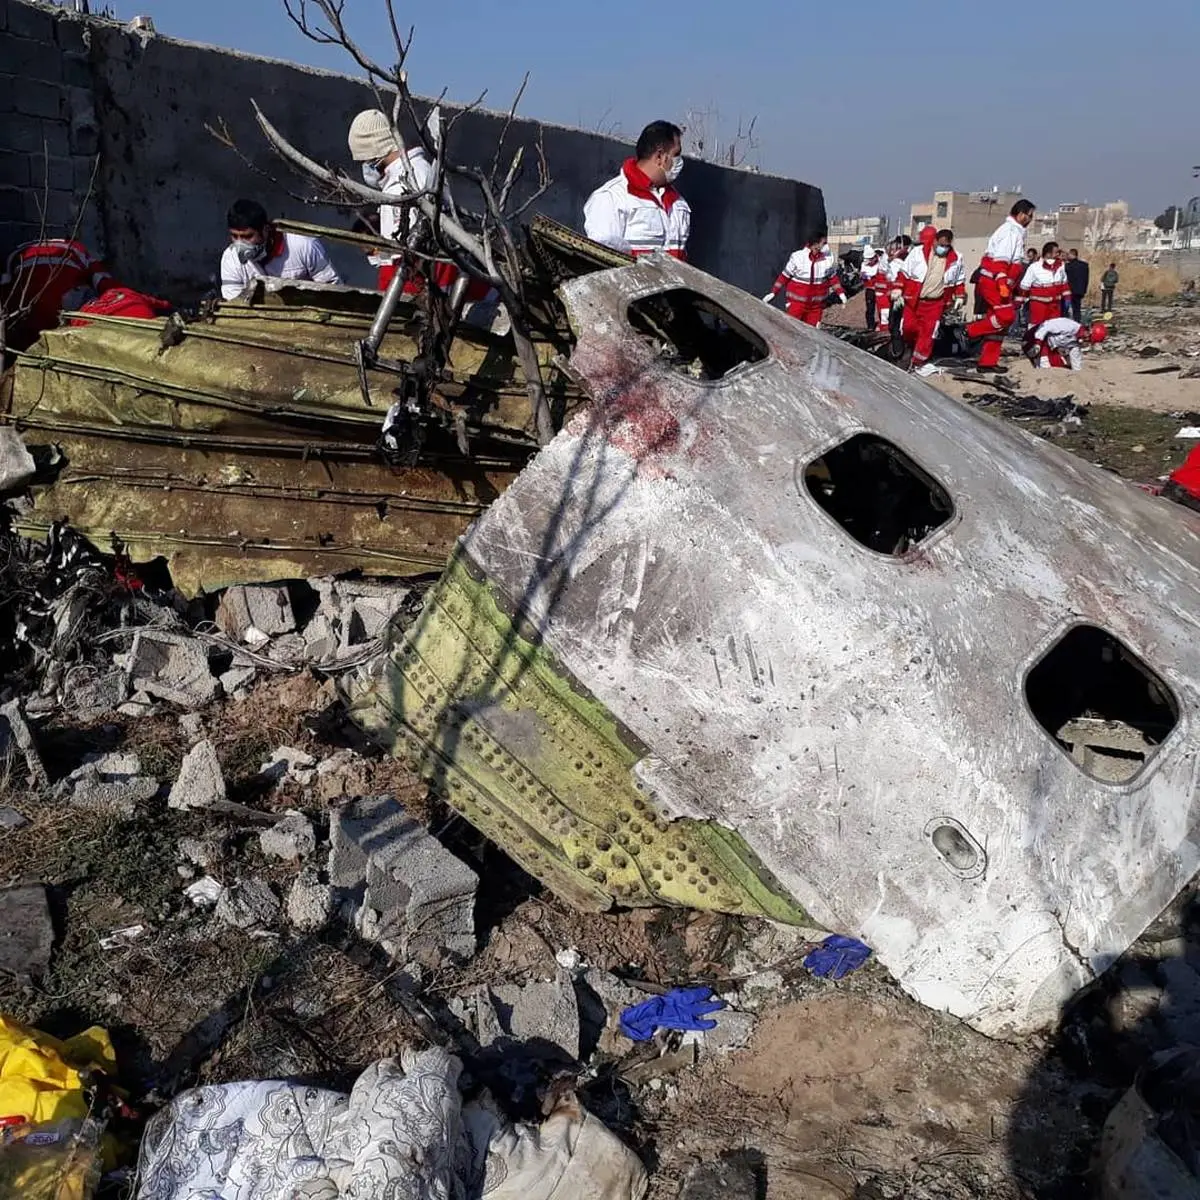 پرداخت خسارت به بازماندگان هواپیمای اکراینی+جزییات